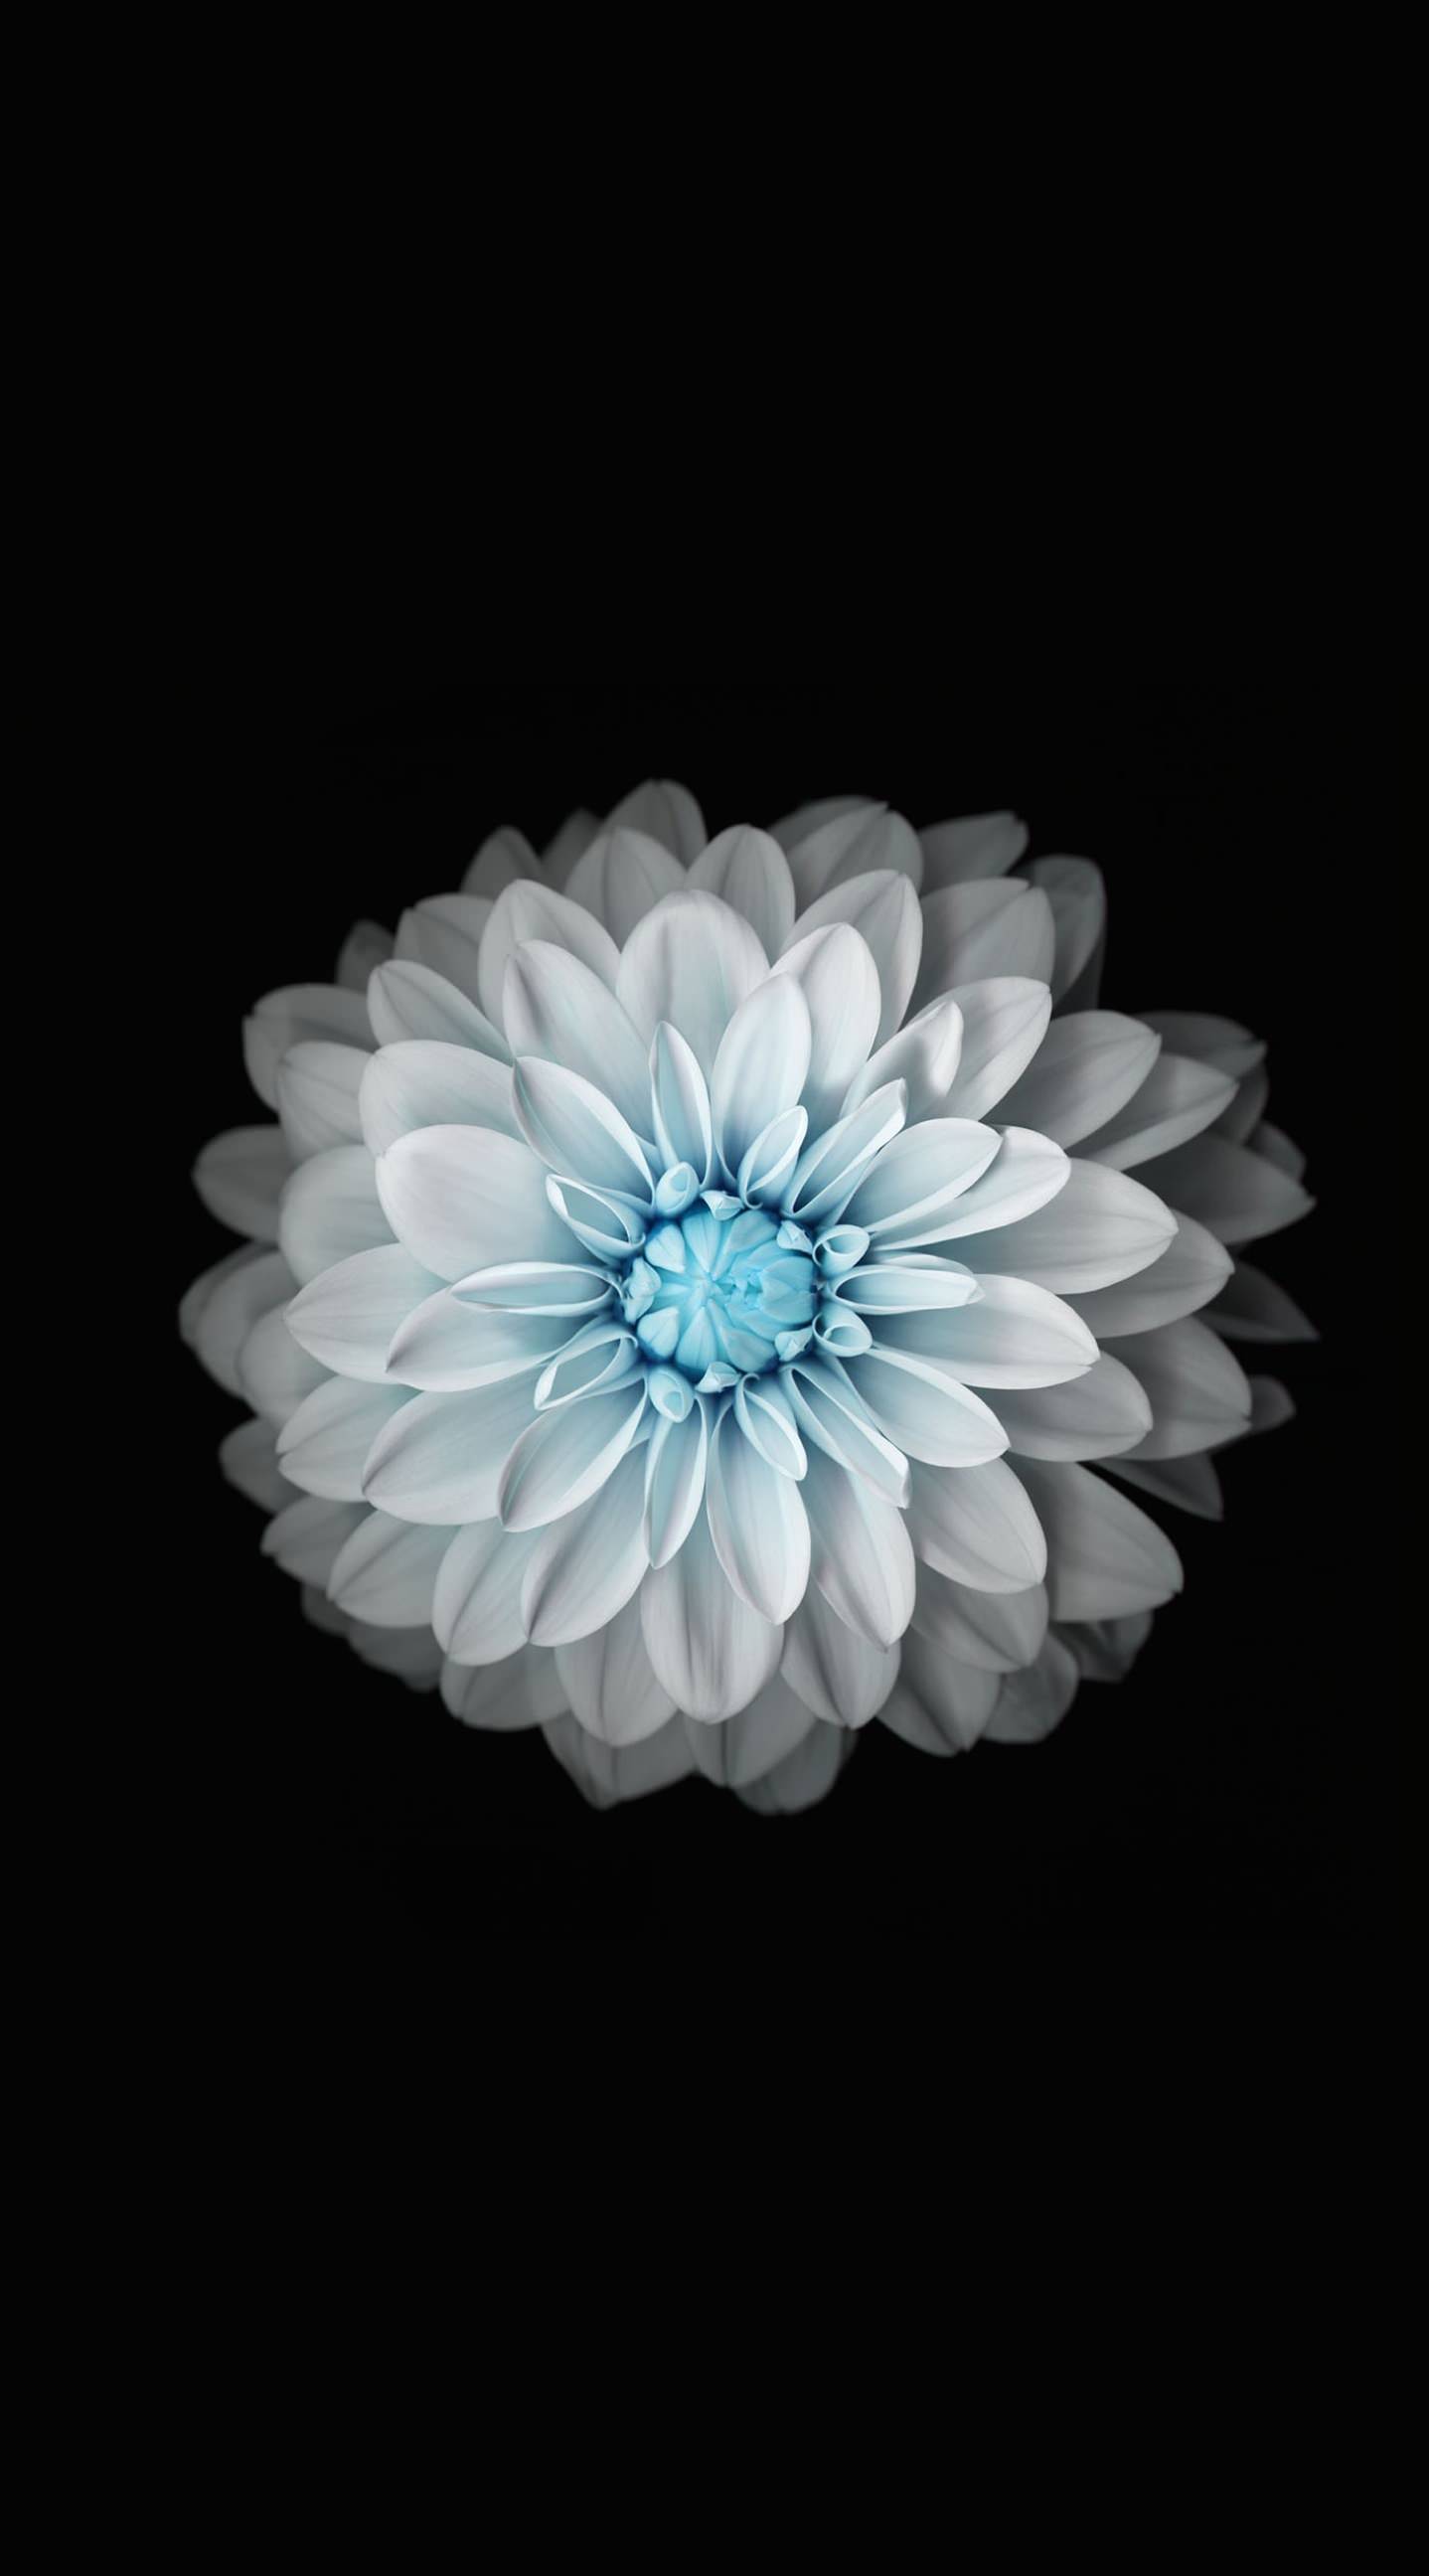 Flower Black And White Wallpaper Sc iPhone6splus